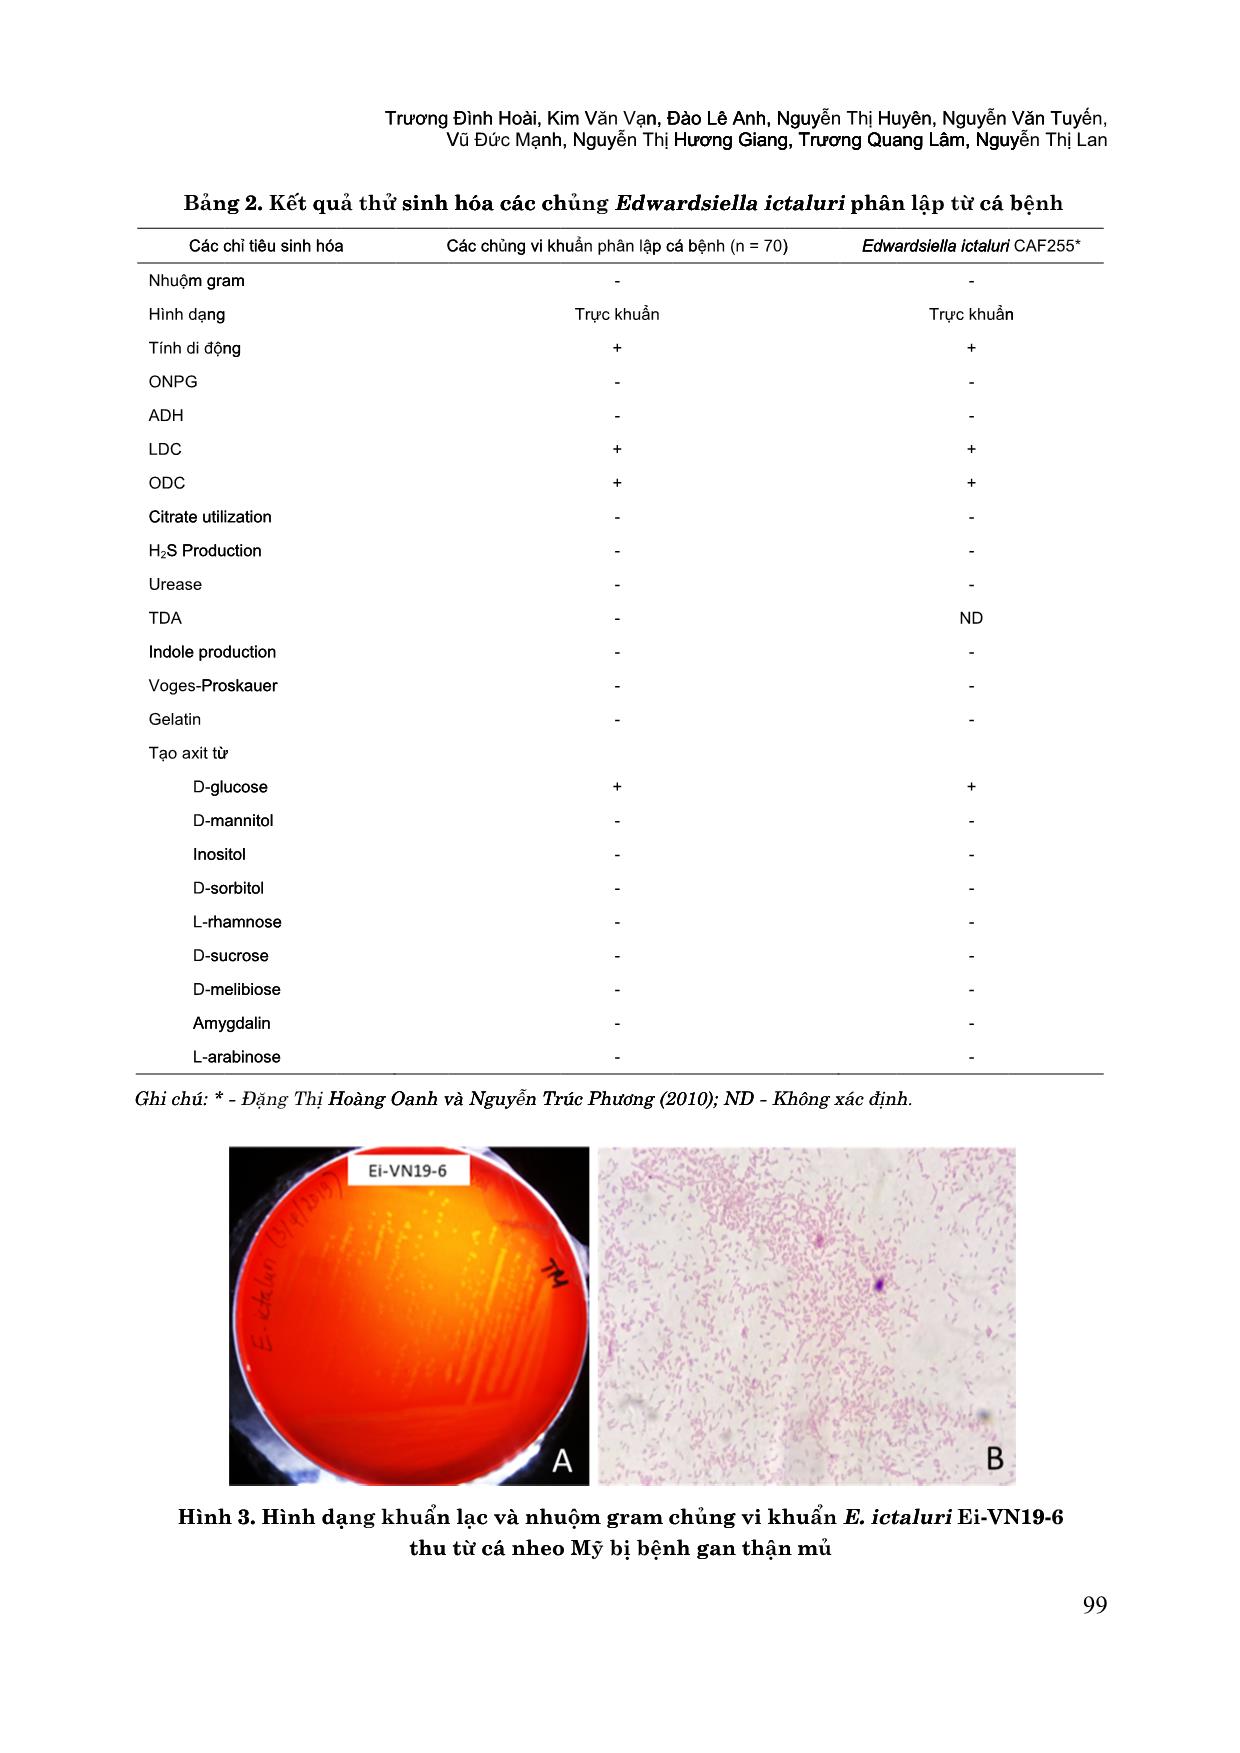 Đặc điểm bệnh lý và ứng dụng phương pháp PCR chẩn đoán bệnh gan thận mủ trên cá nheo Mỹ (Ictalurus punctatus) trang 6